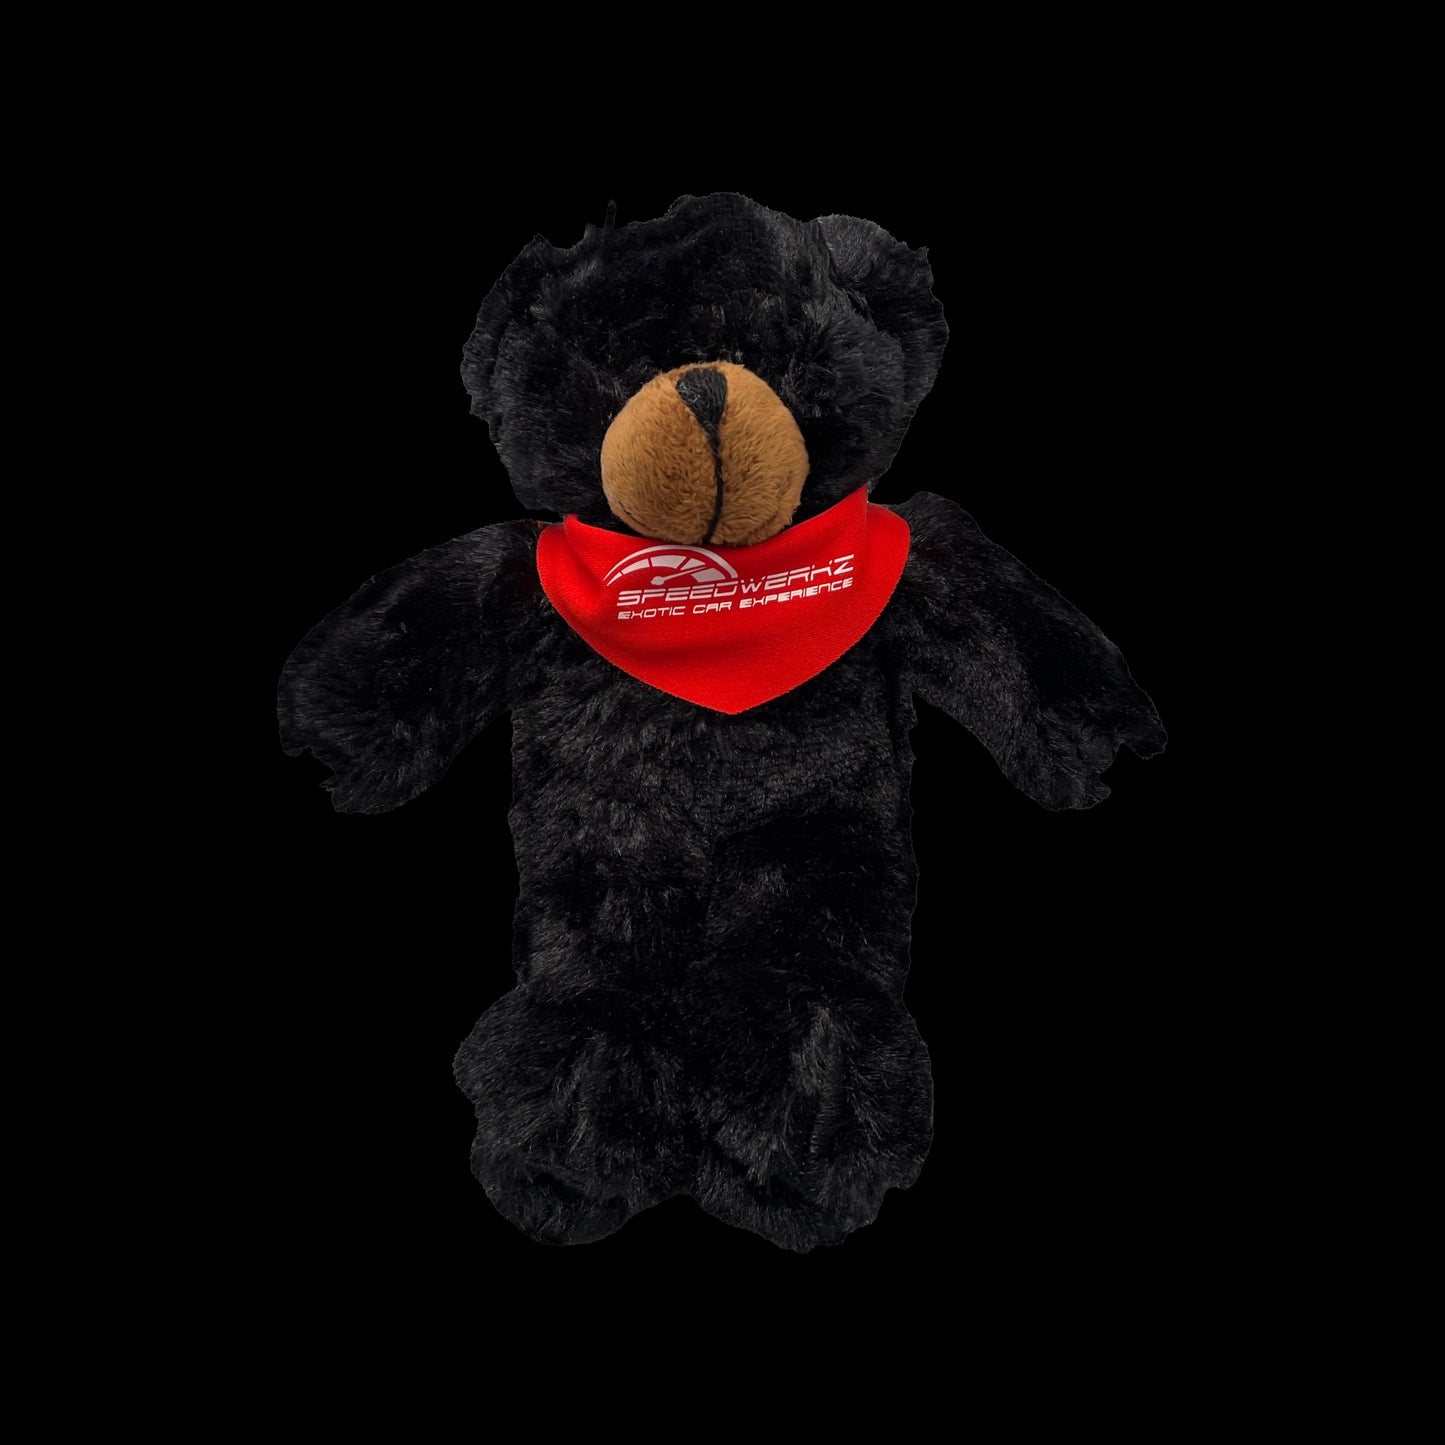 black bear stuffed animal with a red Speedwerkz bandana